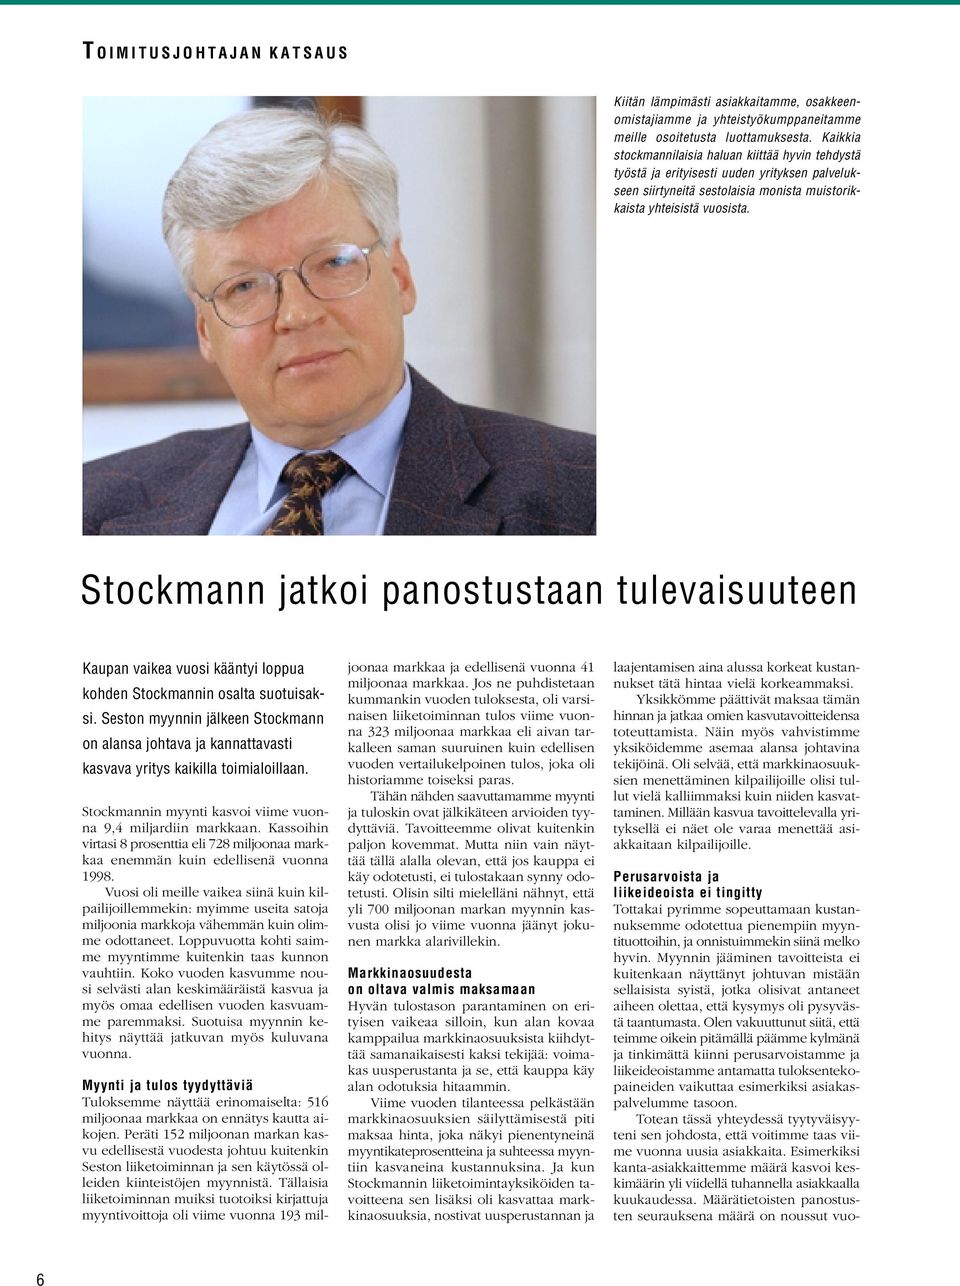 Stockmann jatkoi panostustaan tulevaisuuteen Kaupan vaikea vuosi kääntyi loppua kohden Stockmannin osalta suotuisaksi.